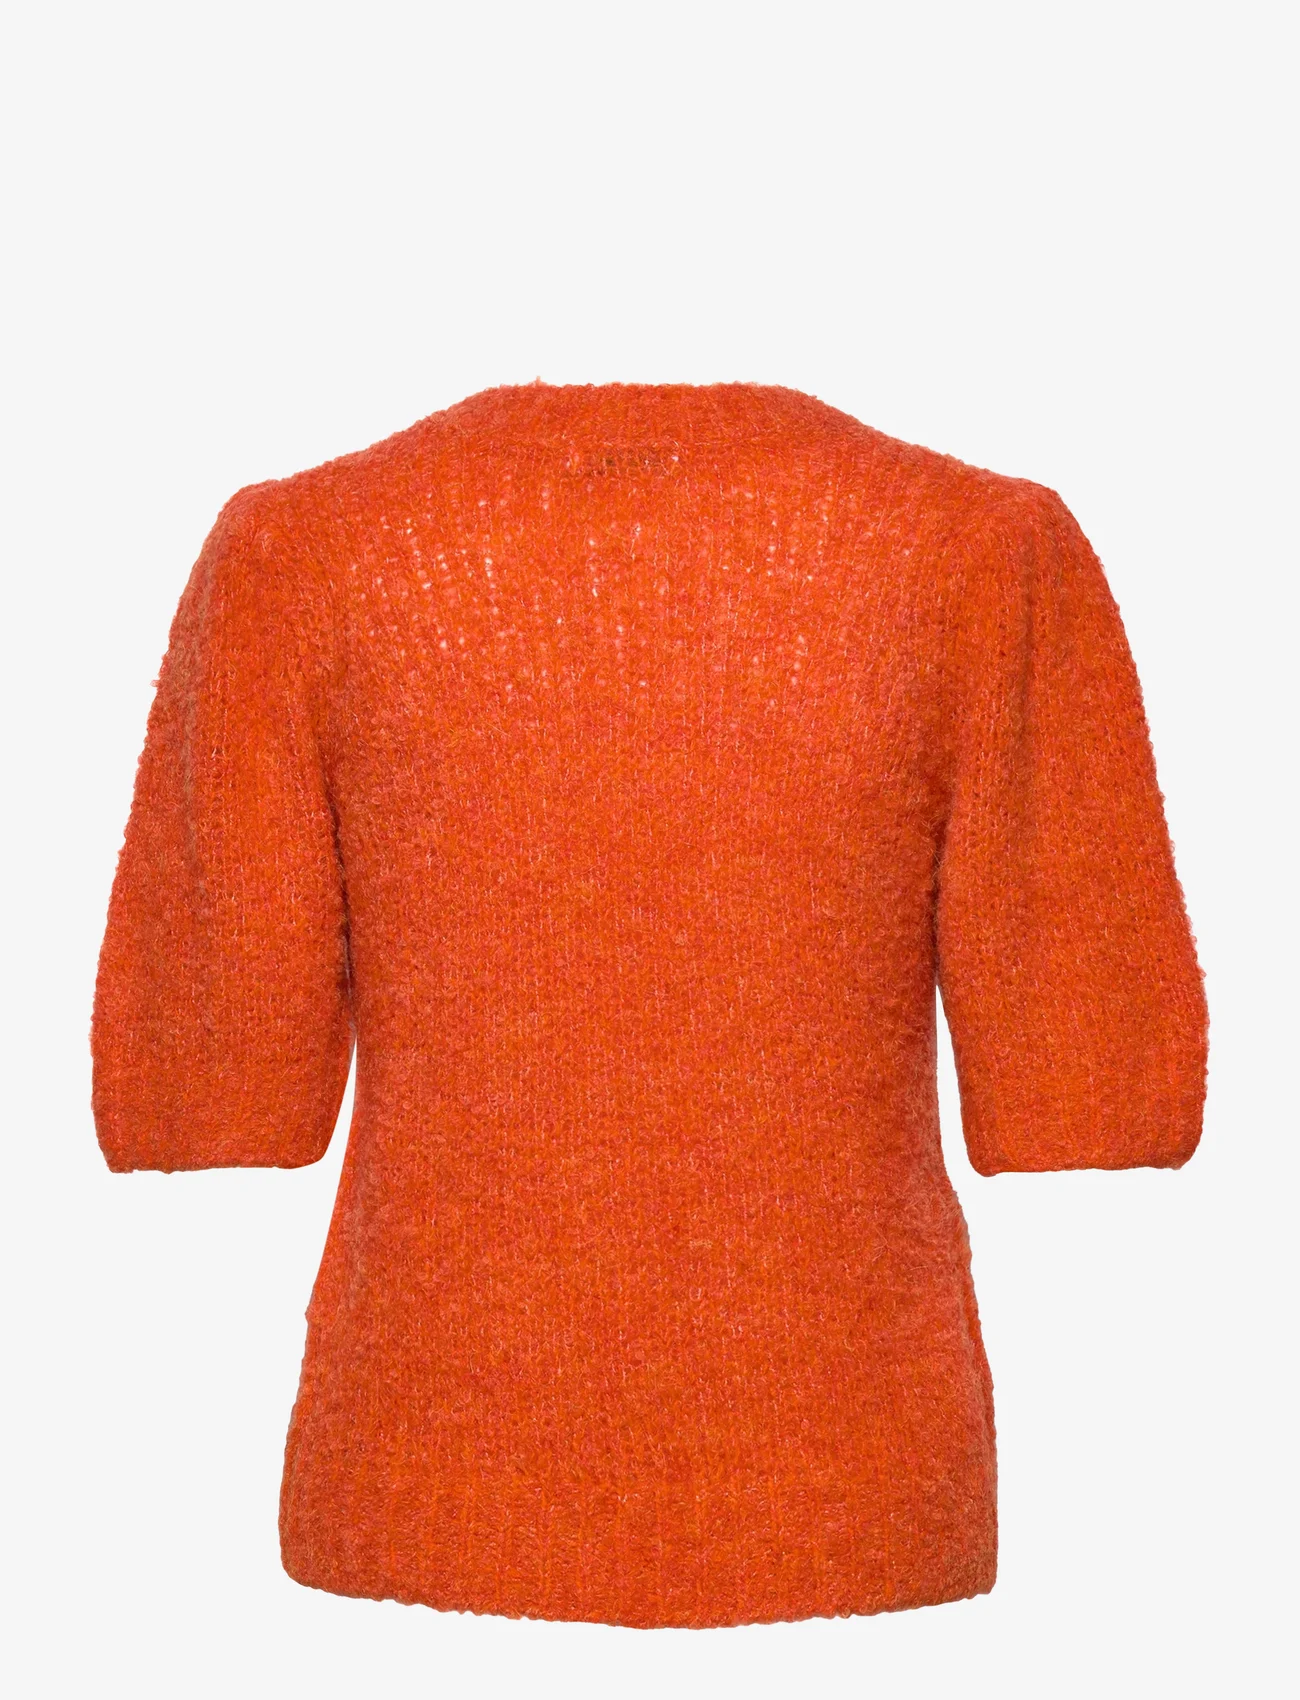 Coster Copenhagen - Knit with puff sleeves - gebreide truien - orange melange - 1